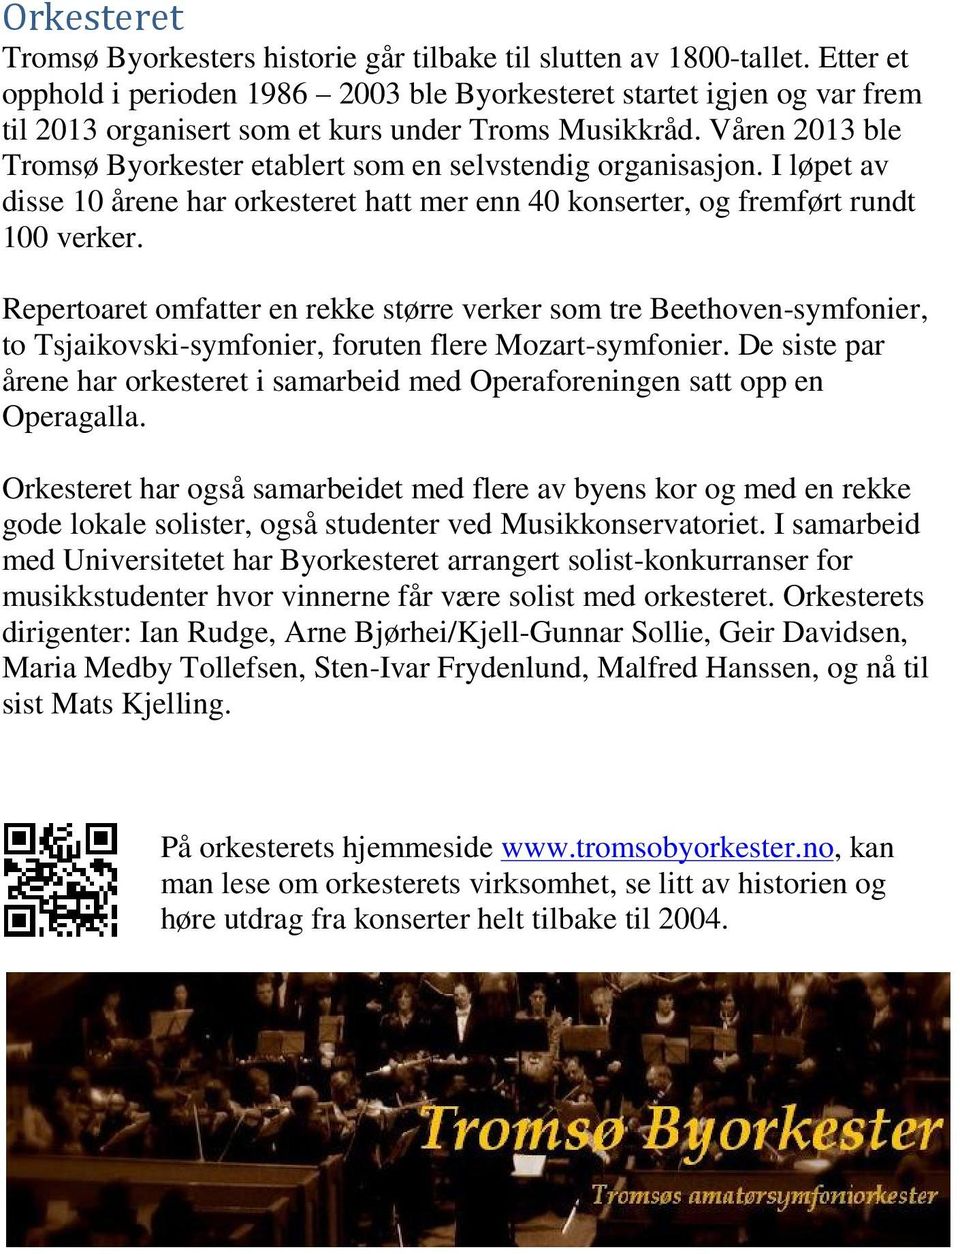 Våren 2013 ble Tromsø Byorkester etablert som en selvstendig organisasjon. I løpet av disse 10 årene har orkesteret hatt mer enn 40 konserter, og fremført rundt 100 verker.